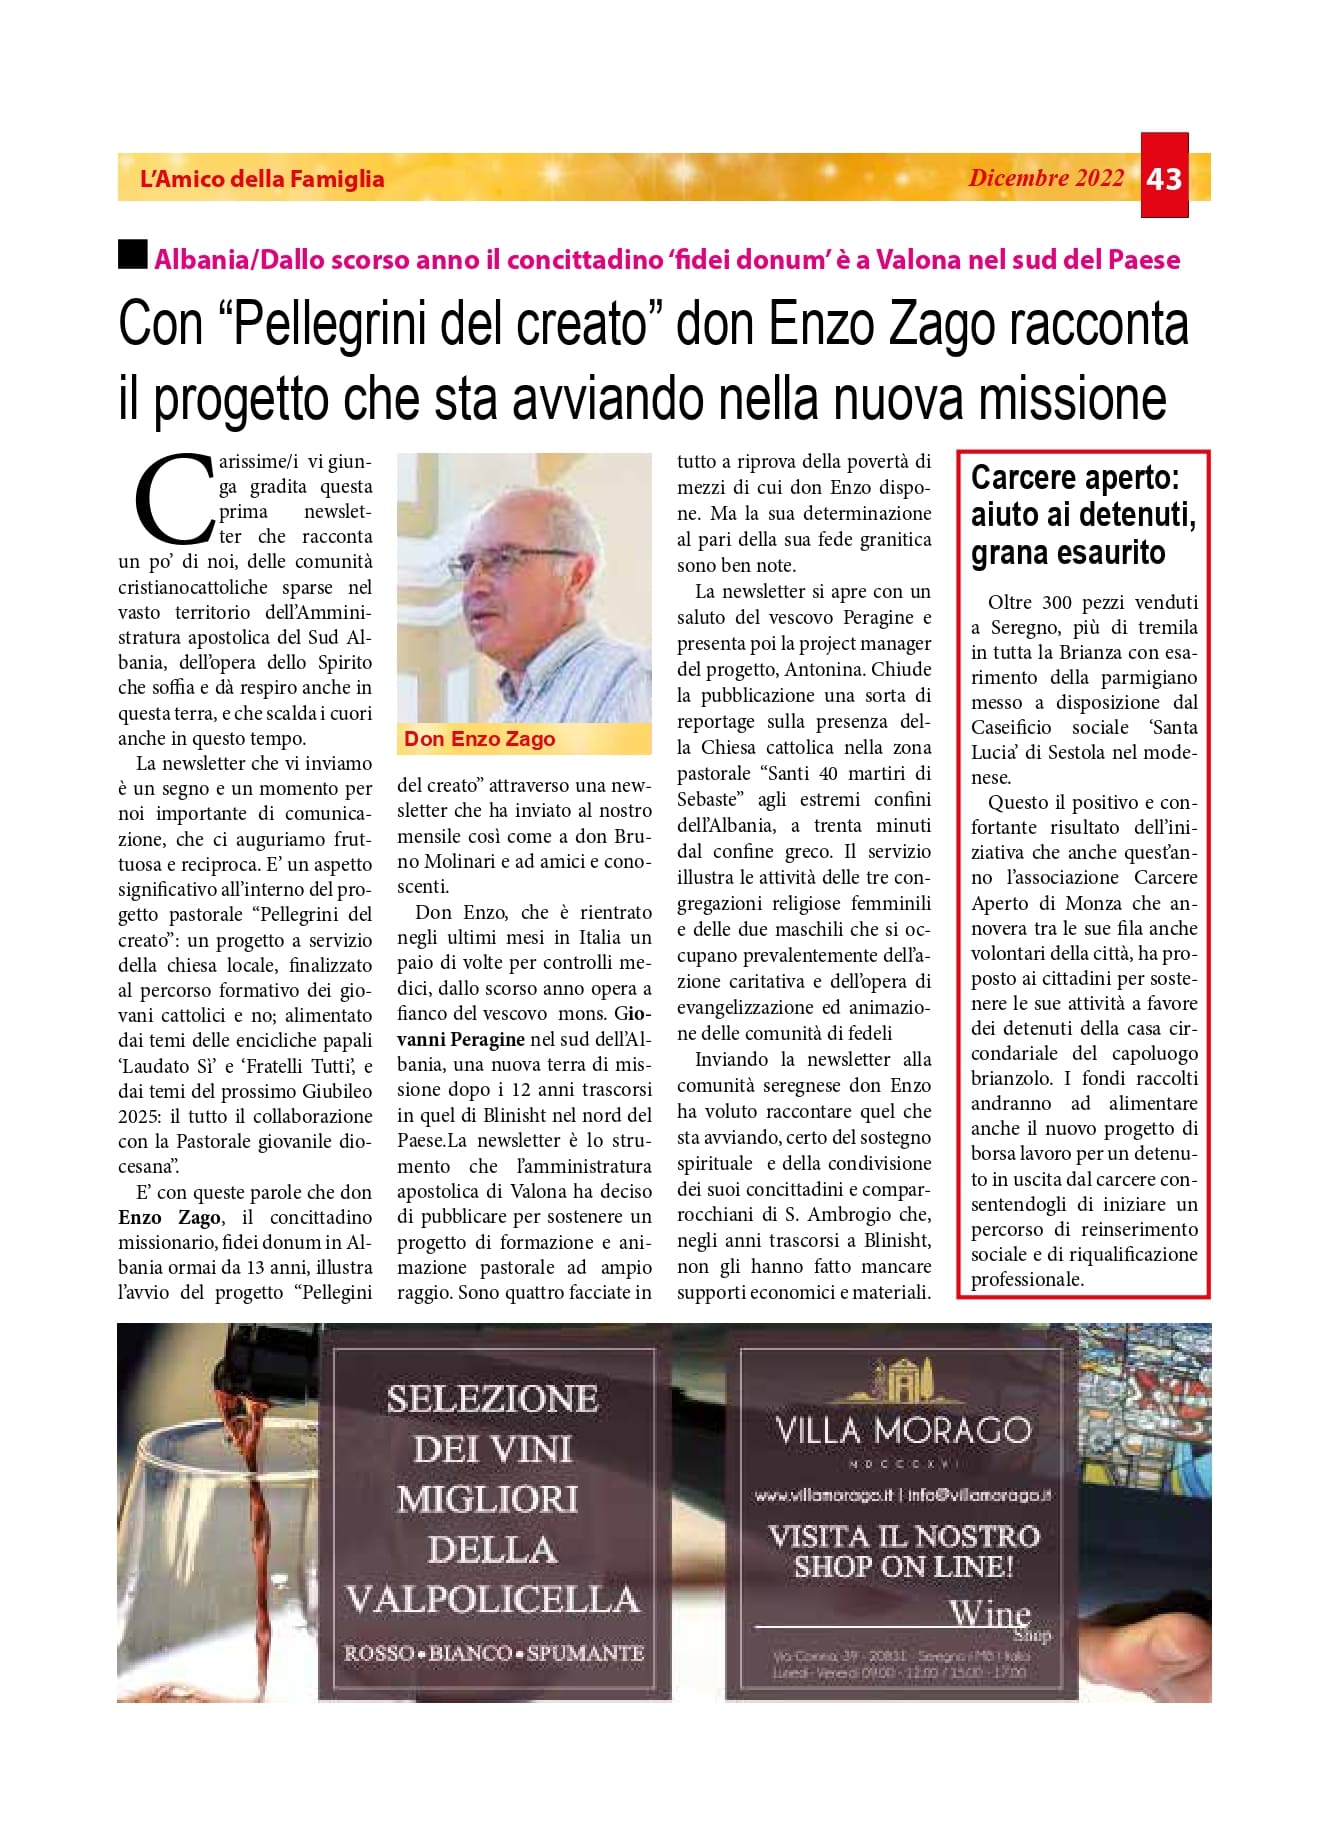 Con “Pellegrini del creato” don Enzo Zago racconta il progetto che sta avviando nella nuova missione